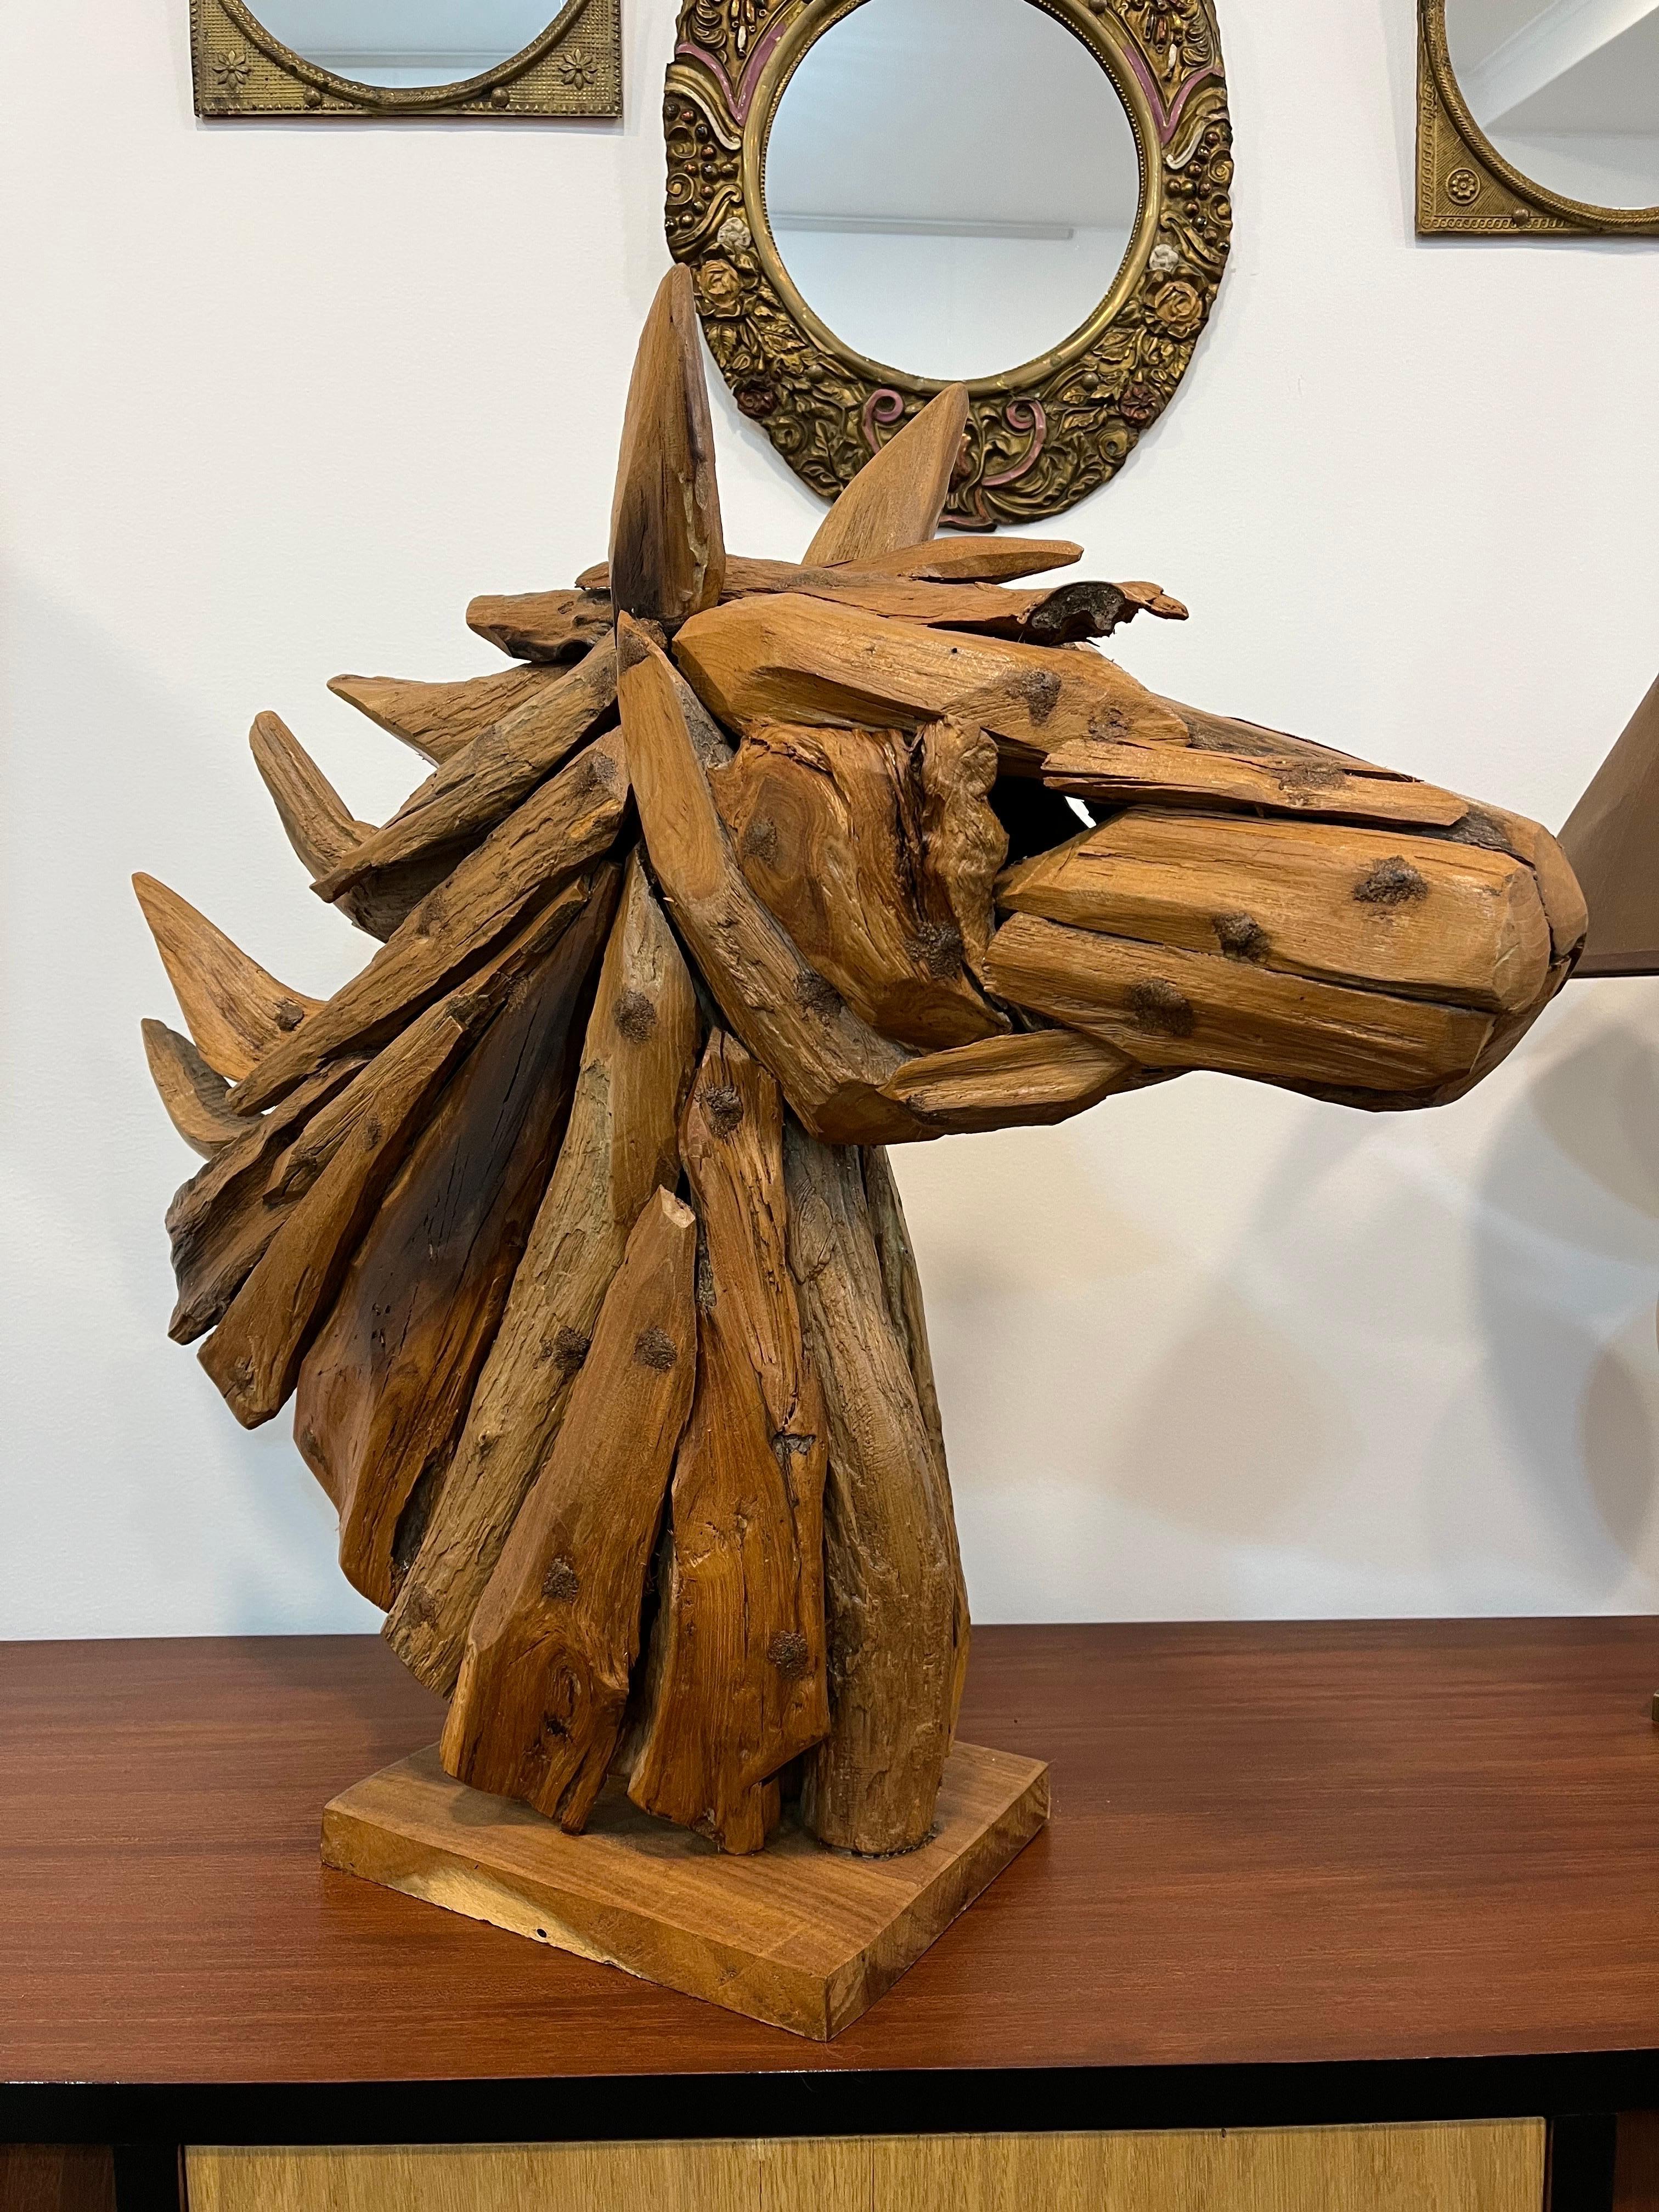 Pferdekopf-Skulptur aus Teakholz-Wurzel. Zeitgenössische Skulptur, hergestellt von einem indonesischen Bildhauer (Bali). Er wurde aus Stücken von Teakwurzeln zusammengesetzt.
Zum Schutz des Holzes wurde eine farblose Lasur aufgetragen.
Spektakuläres